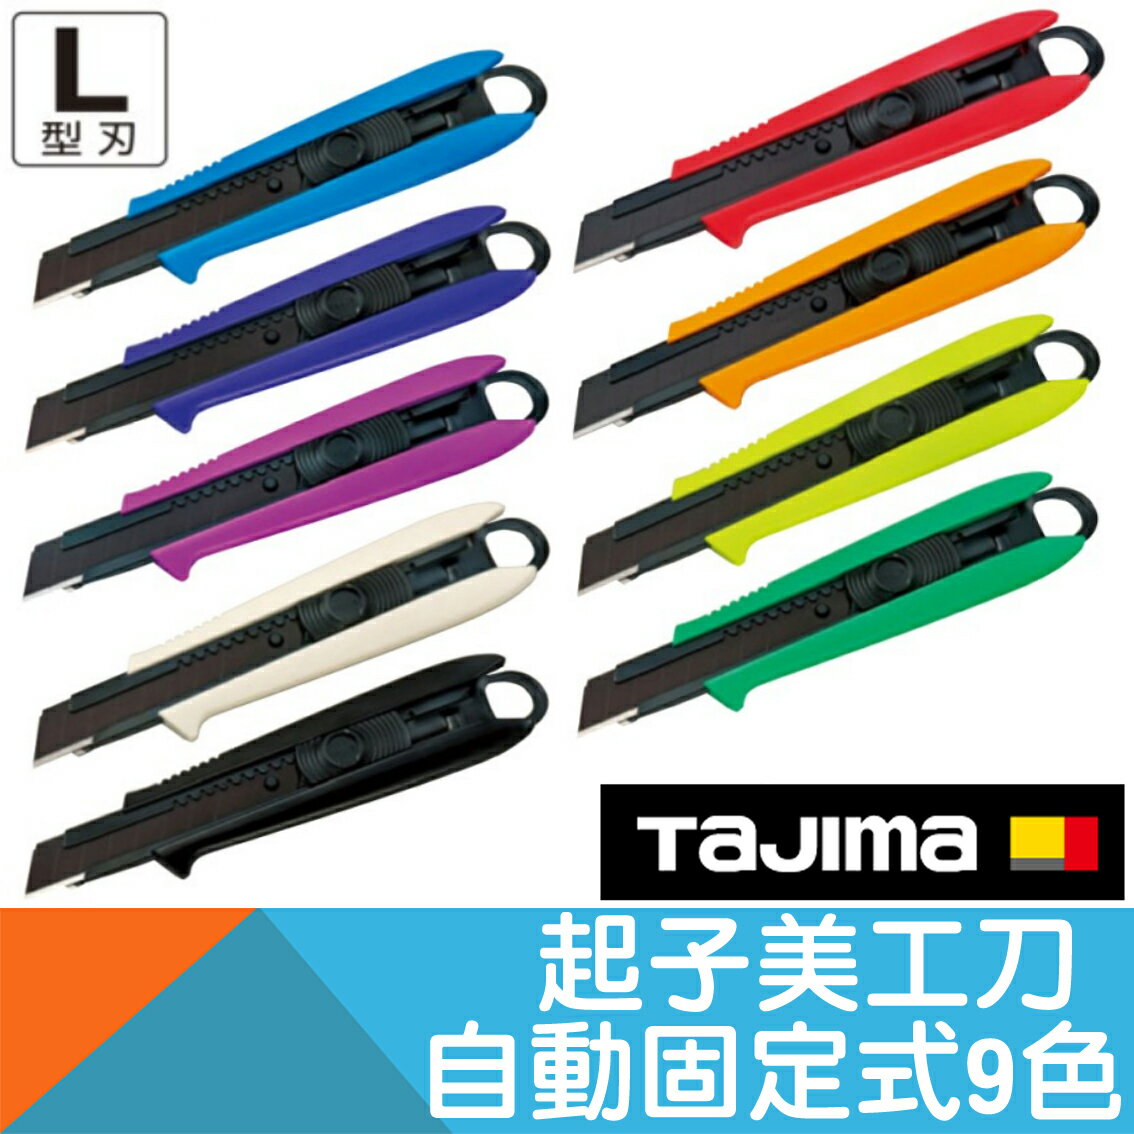 起子美工刀 自動固定式 9種顏色【日本Tajima】